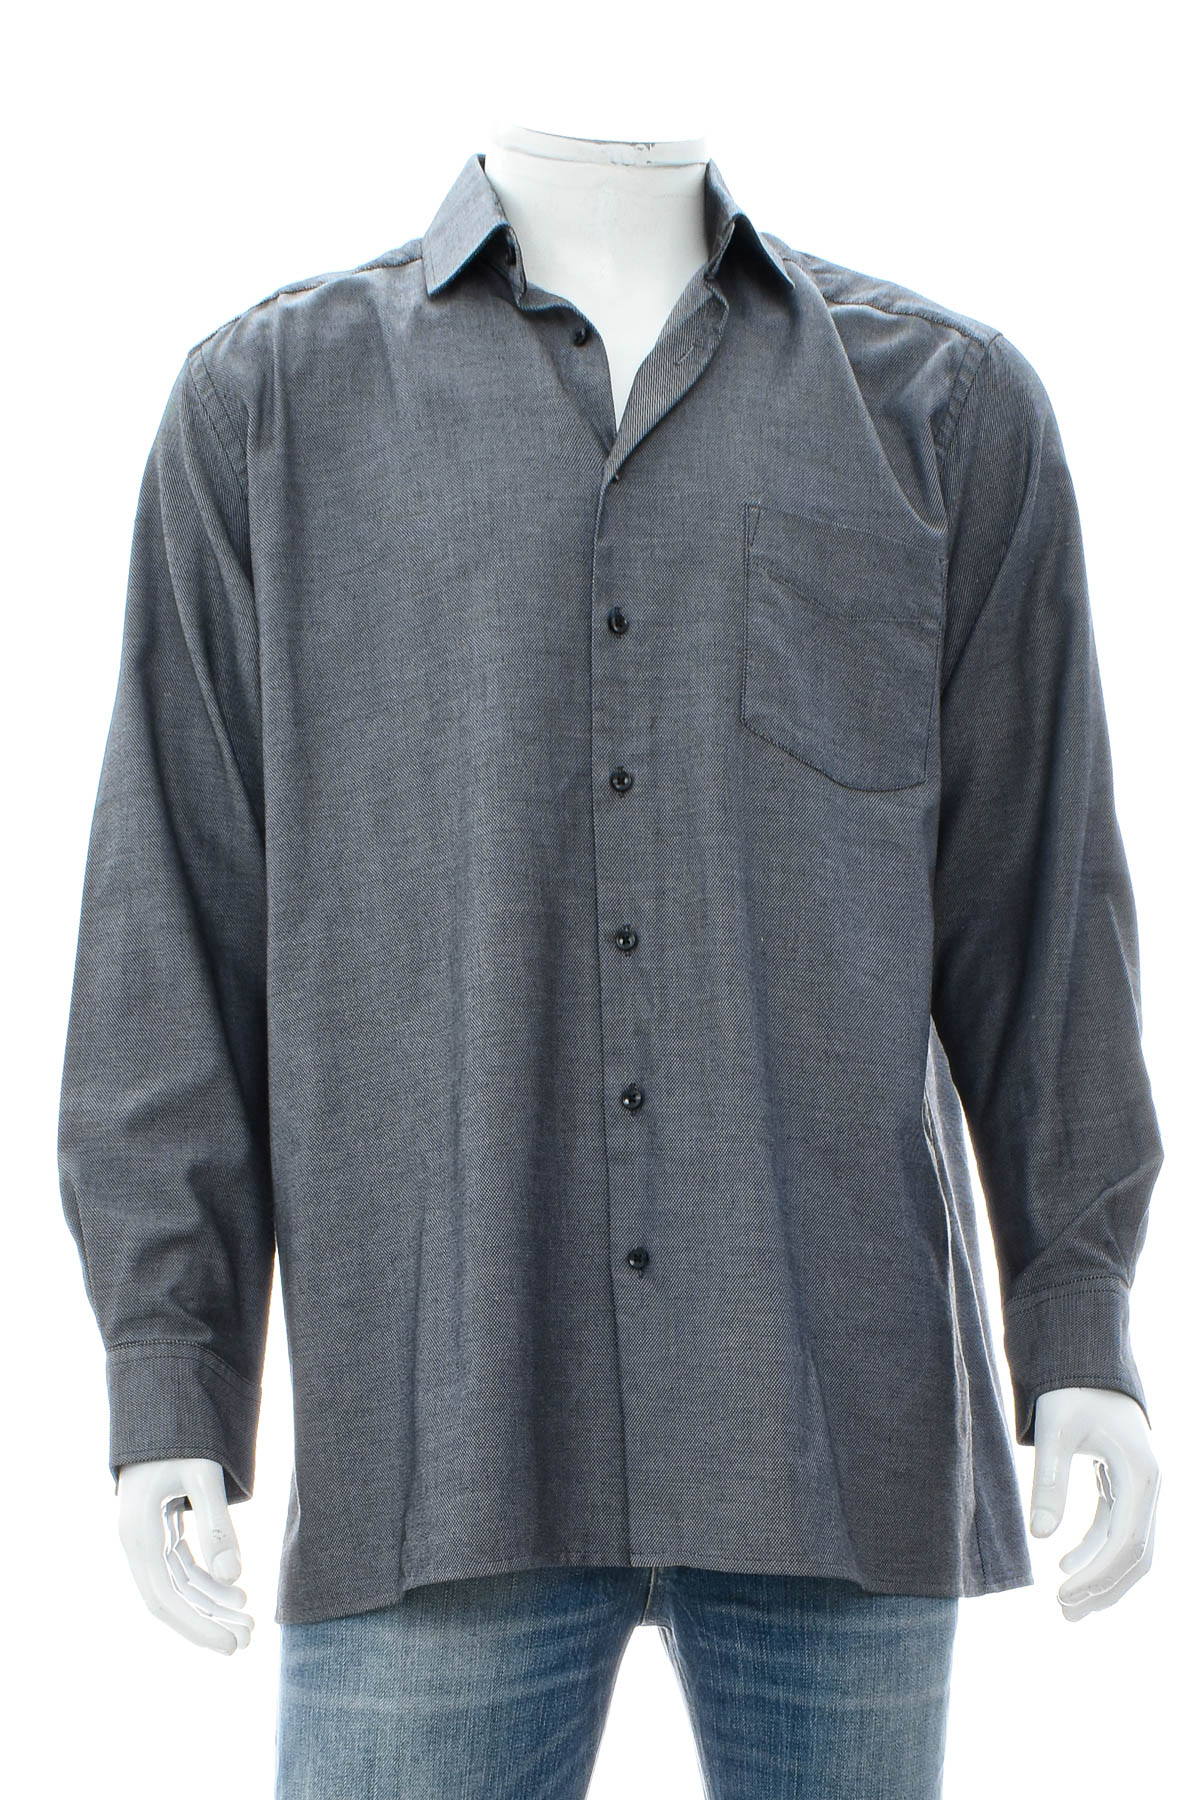 Ανδρικό πουκάμισο - Andrew James - 0